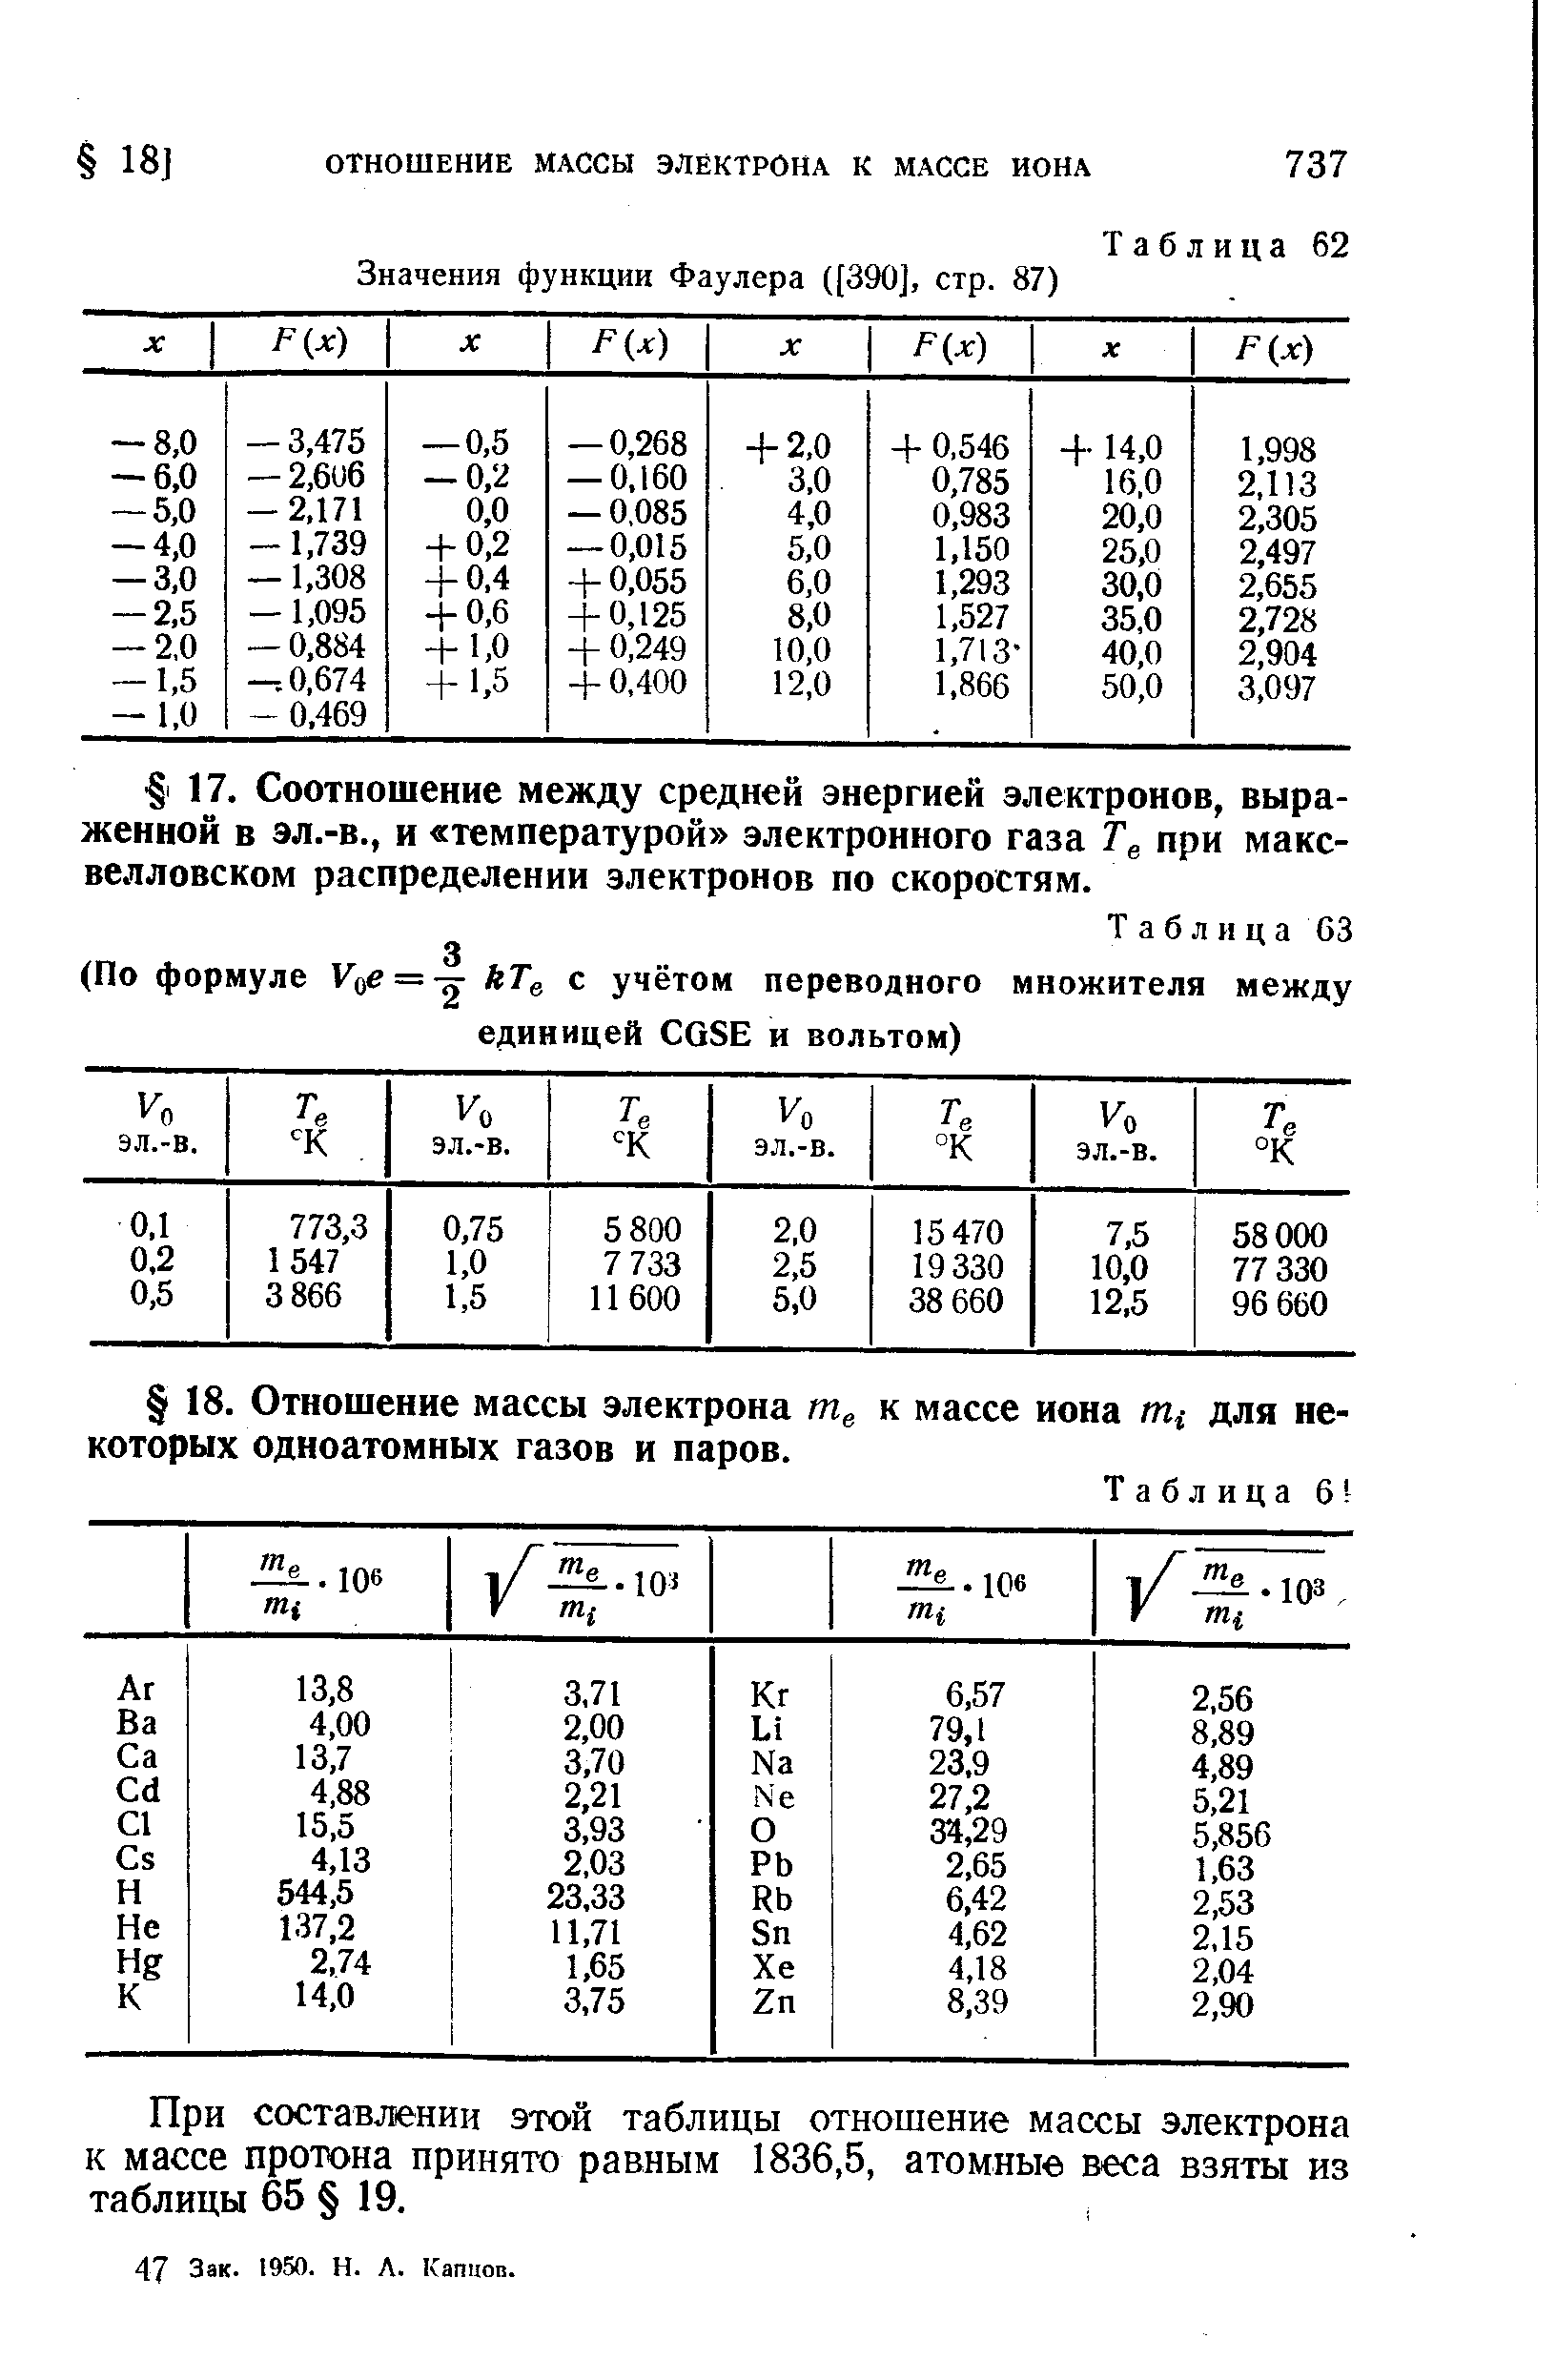 При составлении этой таблицы отношение массы электрона к массе протона принято равным 1836,5, атомные веса взяты из таблицы 65 19.